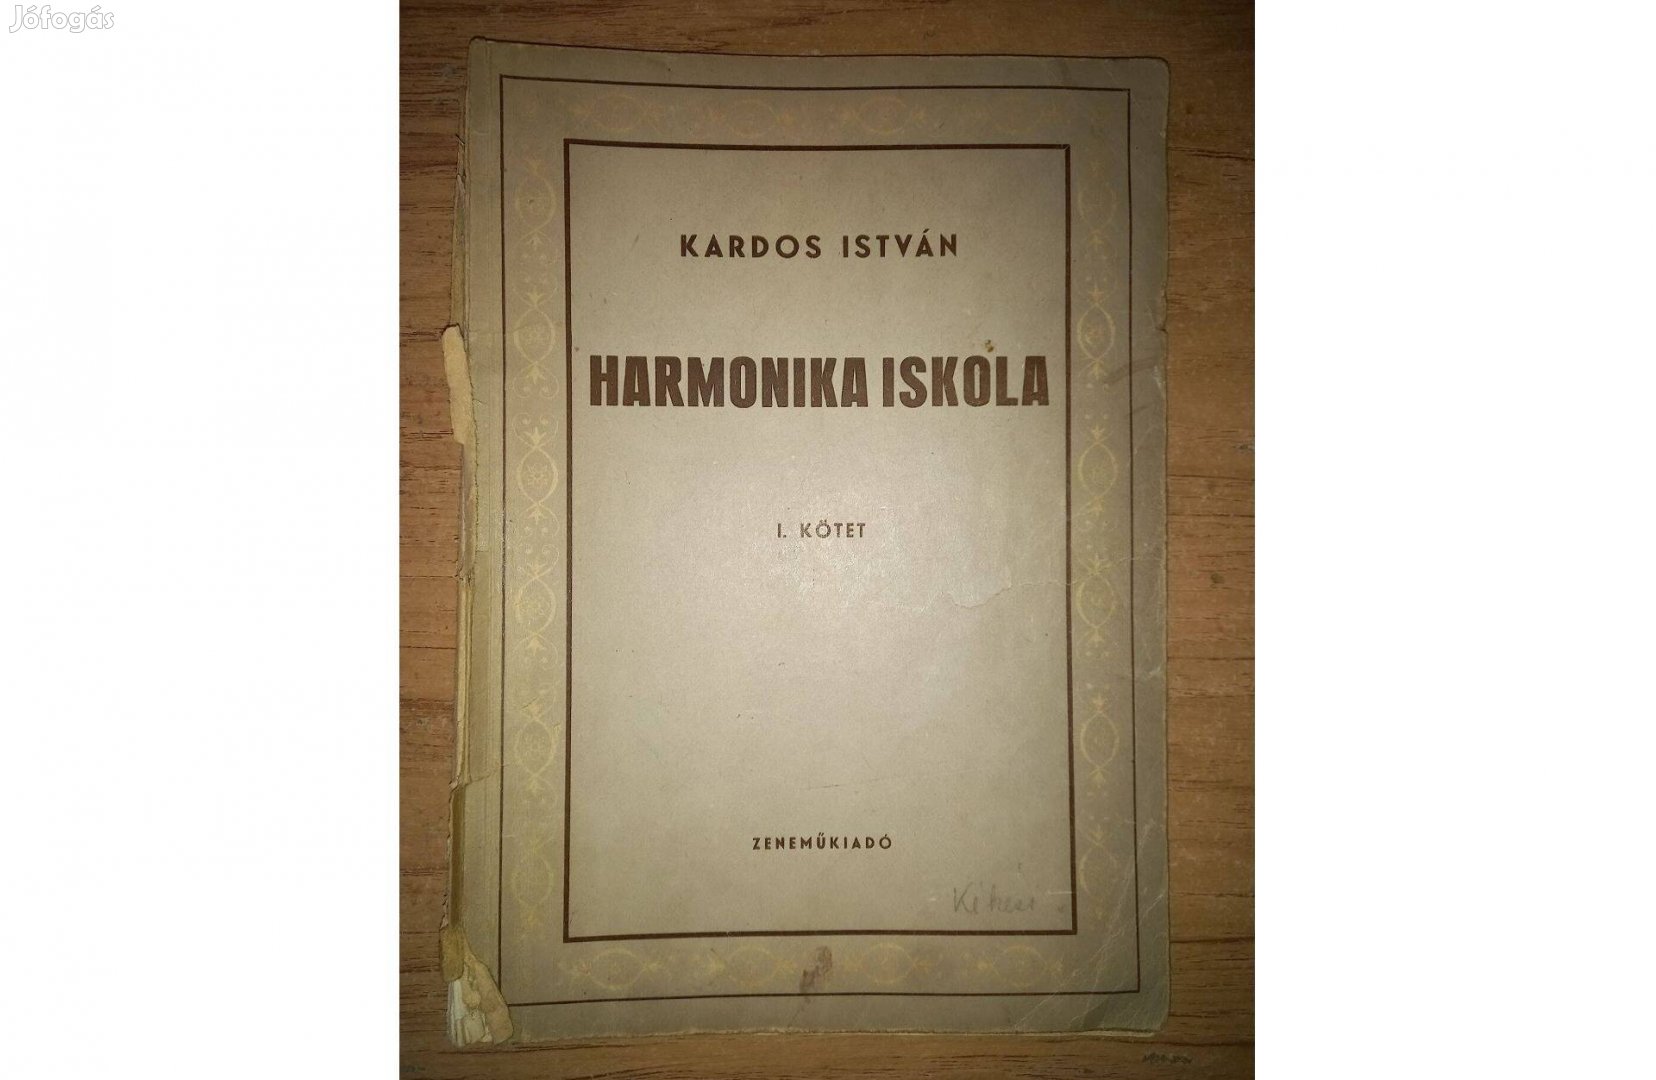 Kardos István: Harmonika iskola / régi kotta 1958